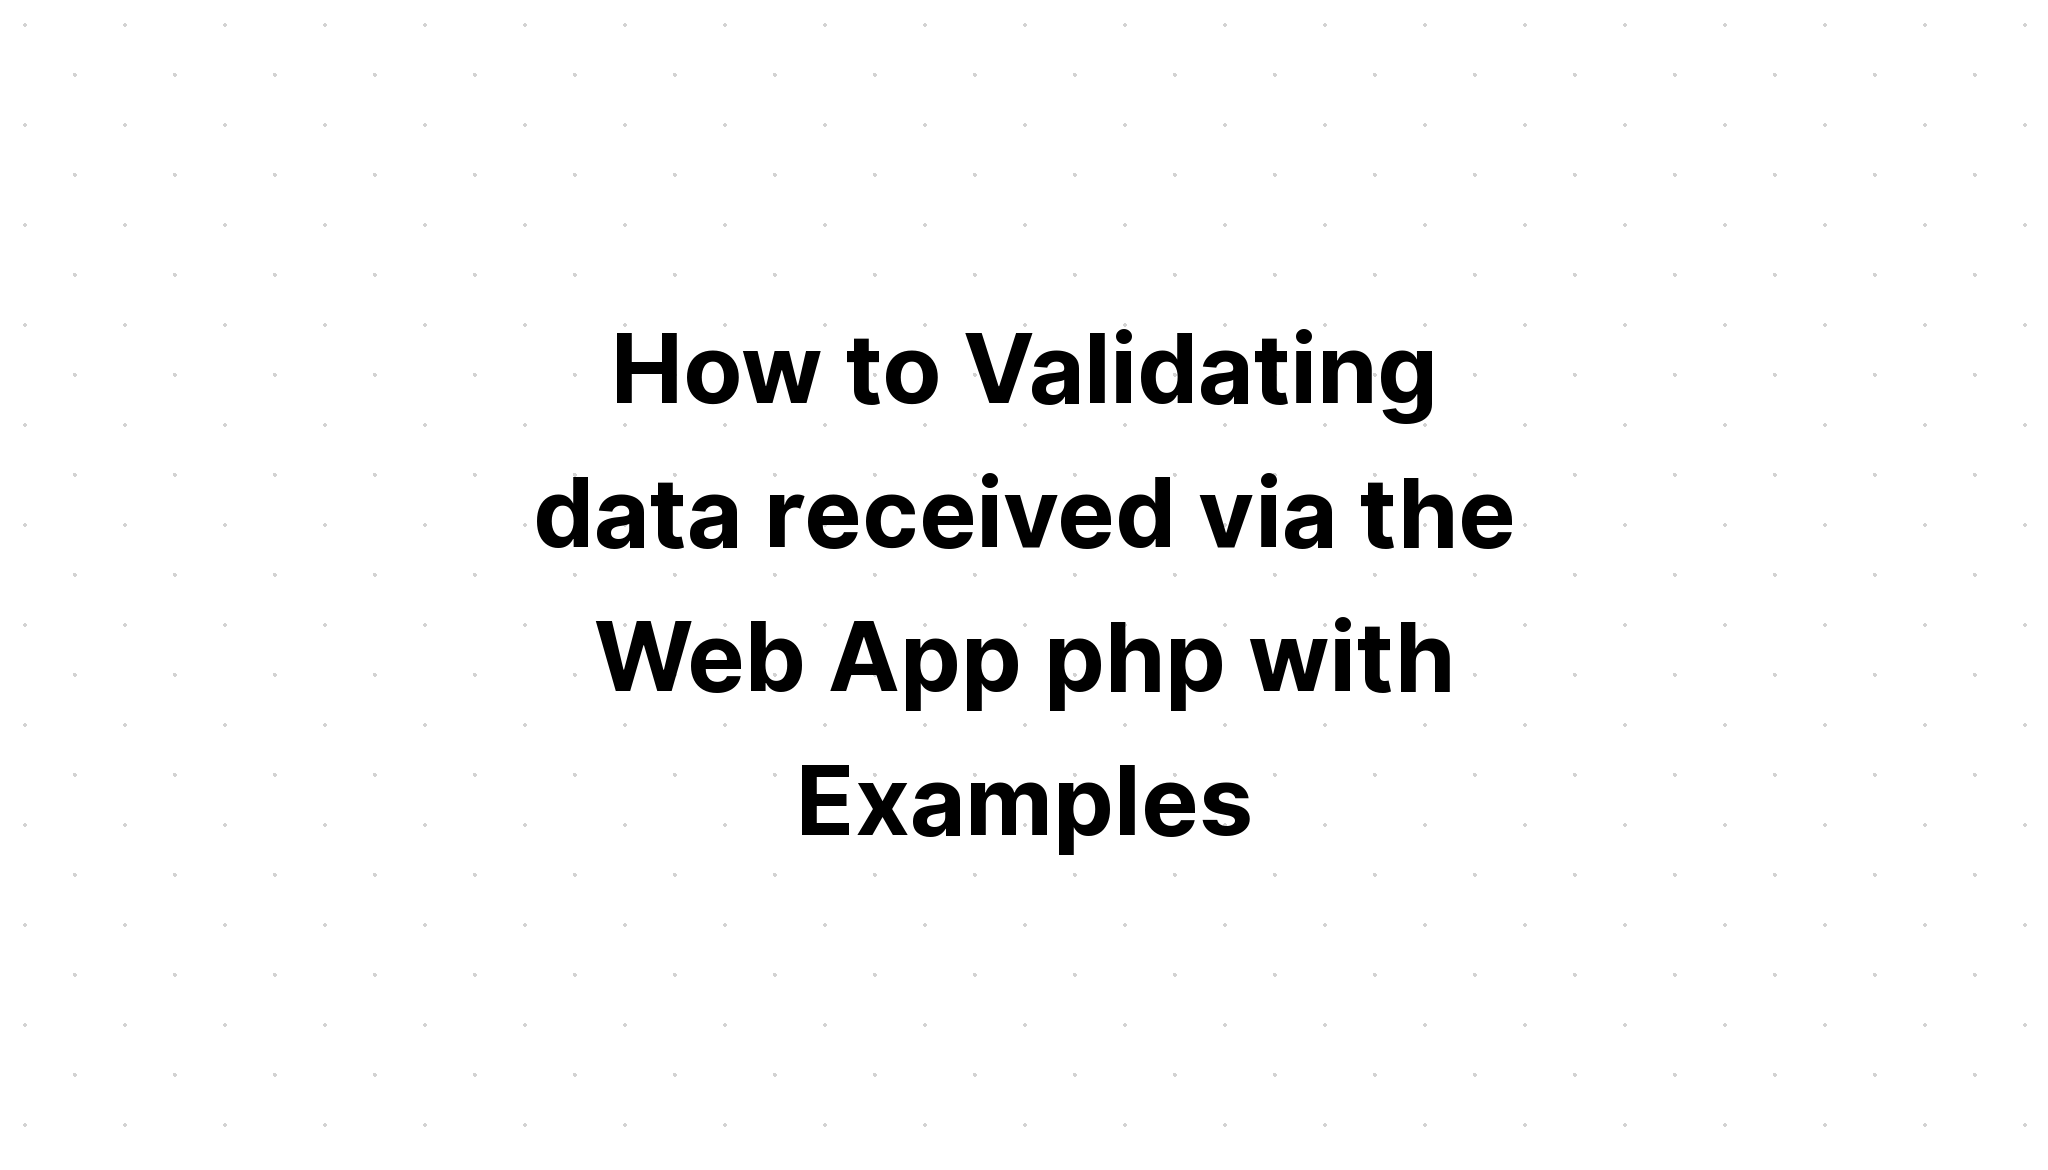 Cách xác thực dữ liệu nhận được qua Web App php với các ví dụ